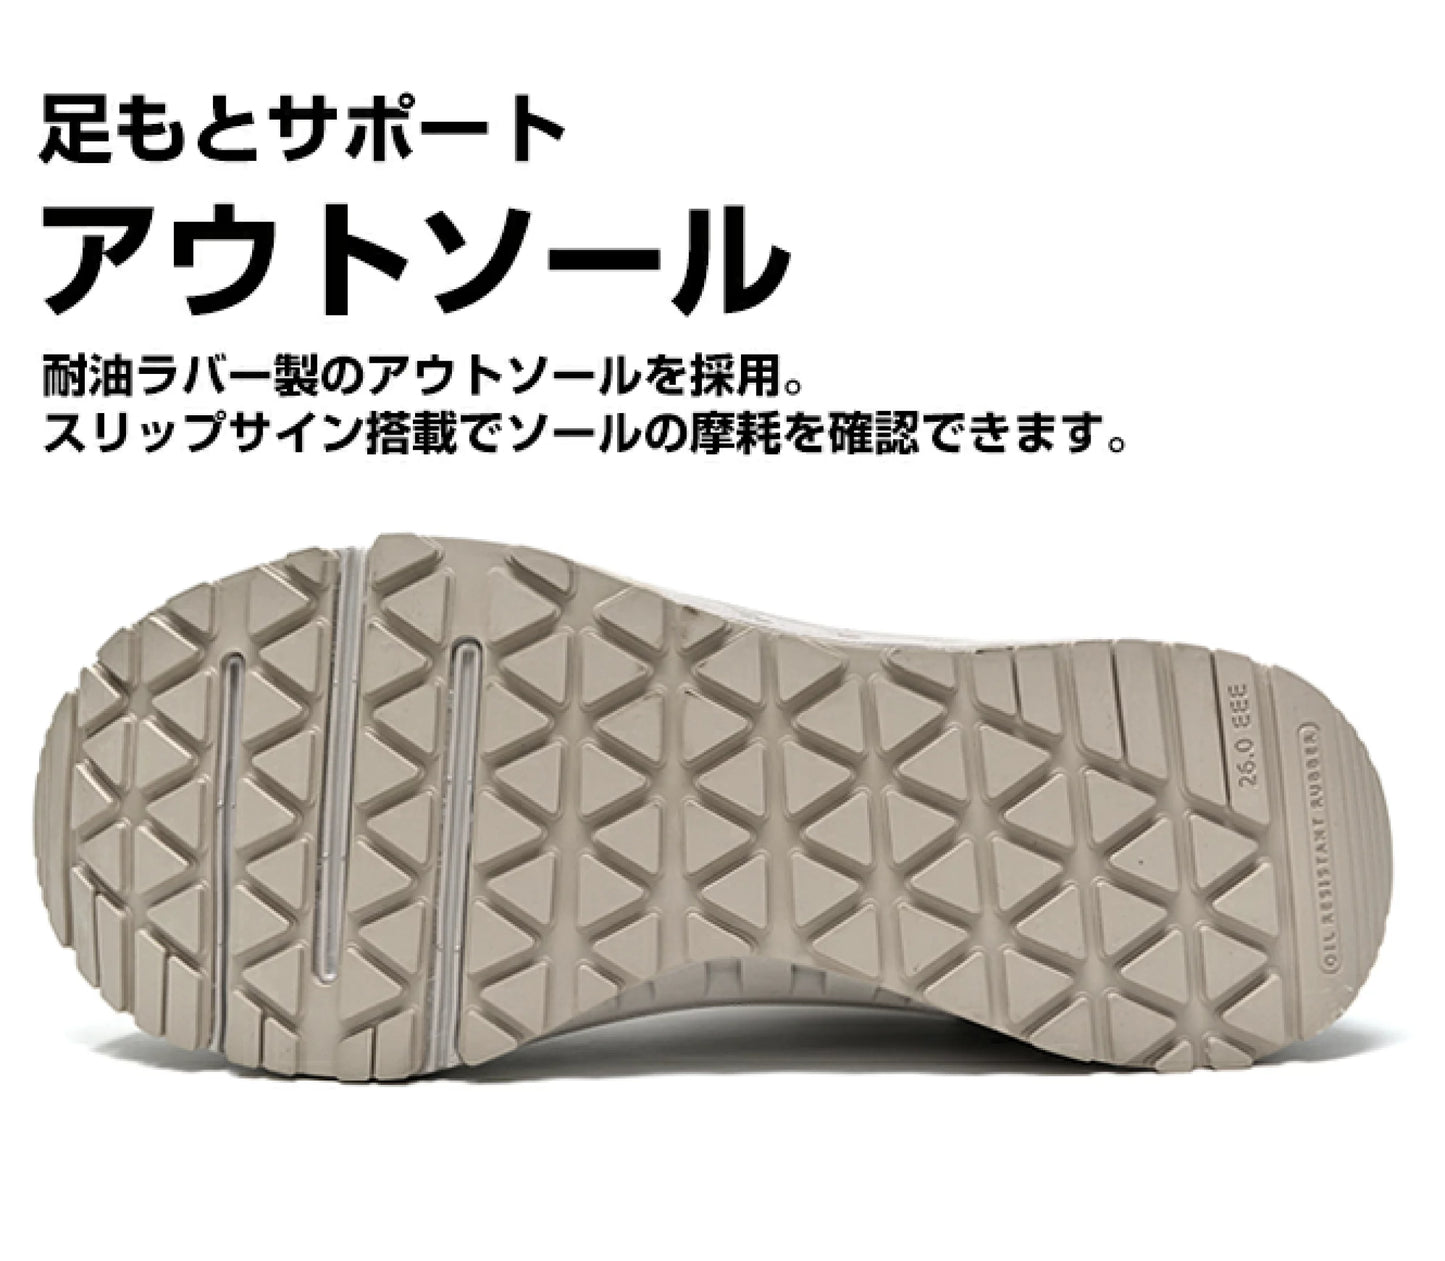 🎌日本🎌 【現貨▪️即寄】ASICS WX 迷彩沙漠色安全鞋 EU42.5 US9 26.5cm